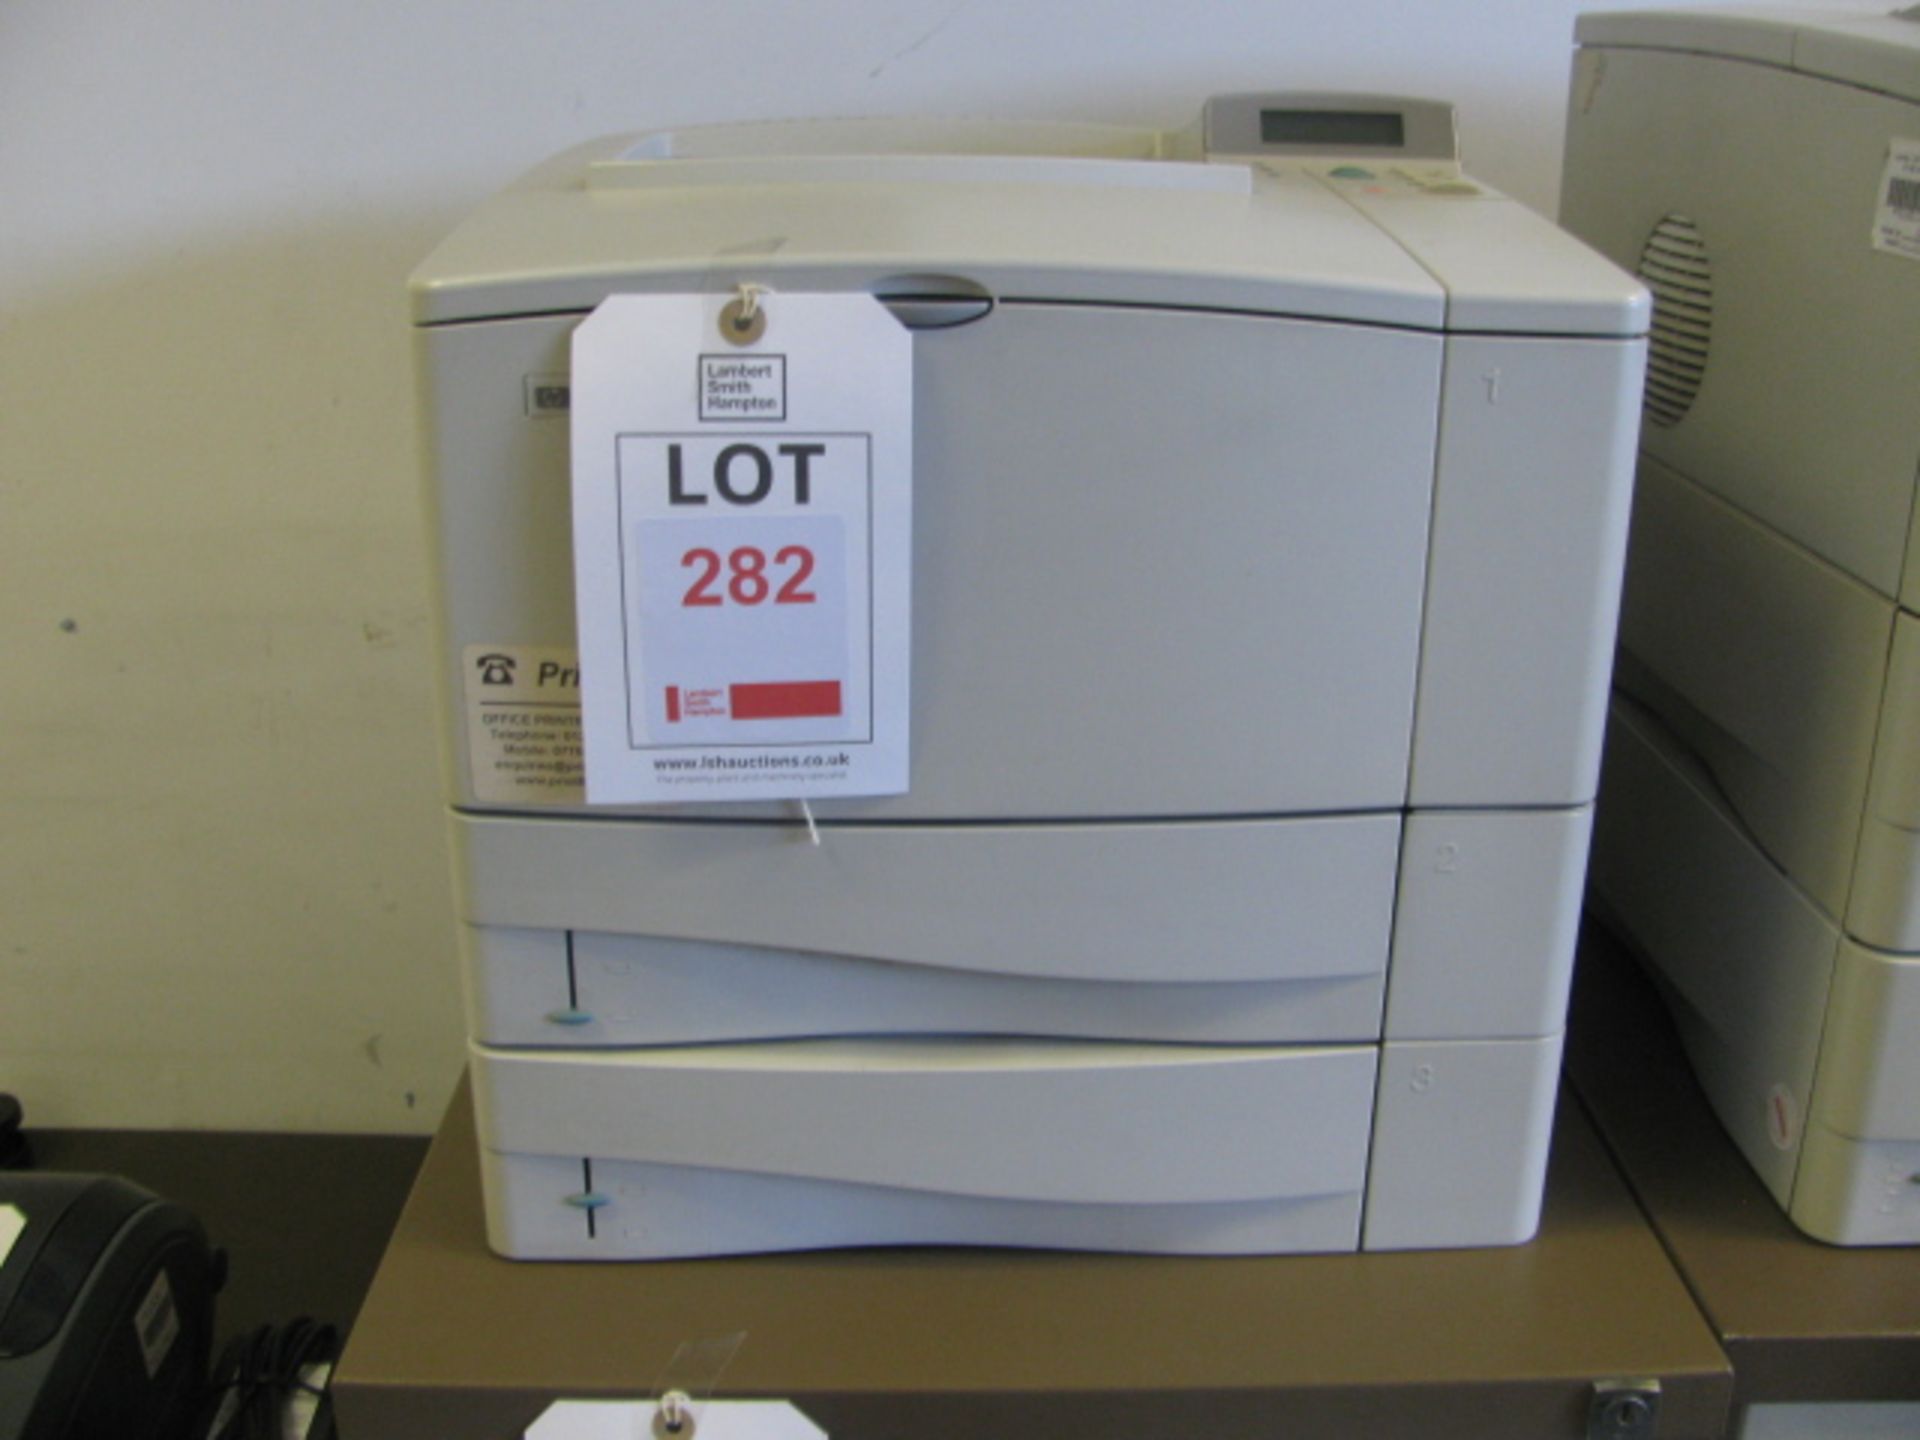 Hewlett Packard Laserjet 4050TN printer